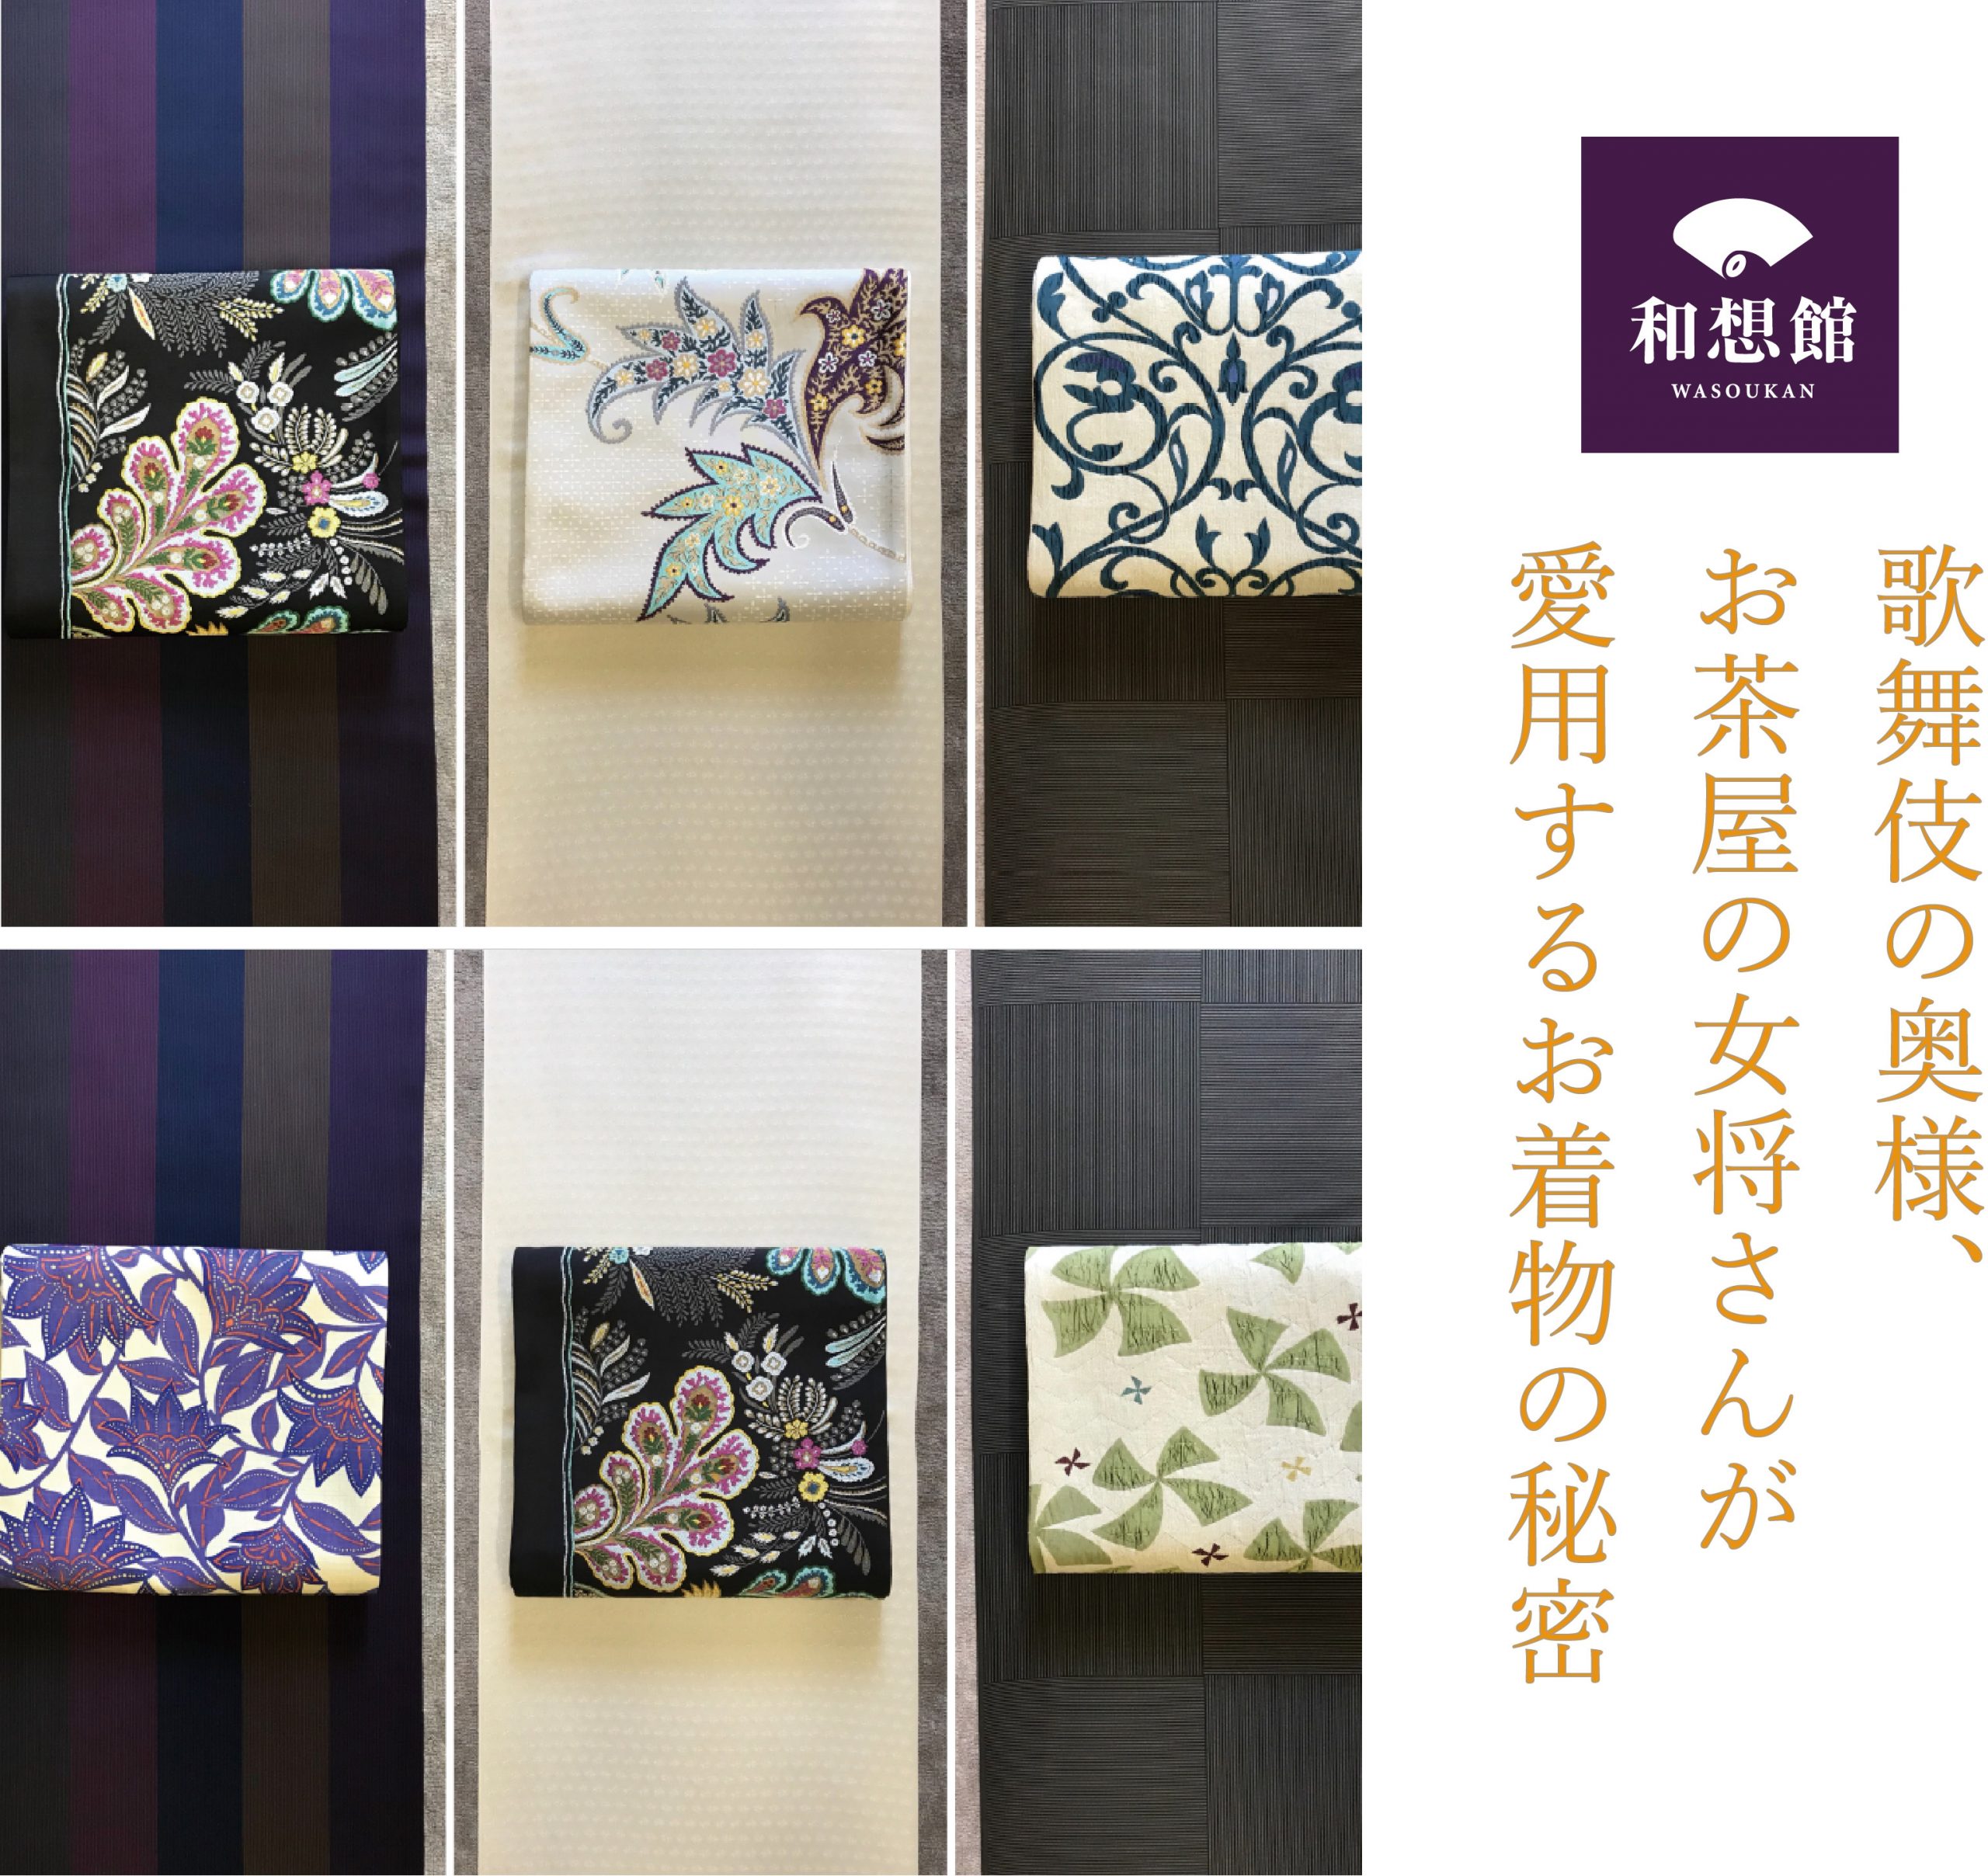 【米子店】8月展示 歌舞伎の奥様、お茶屋の女将さんが 愛用するお着物の秘密